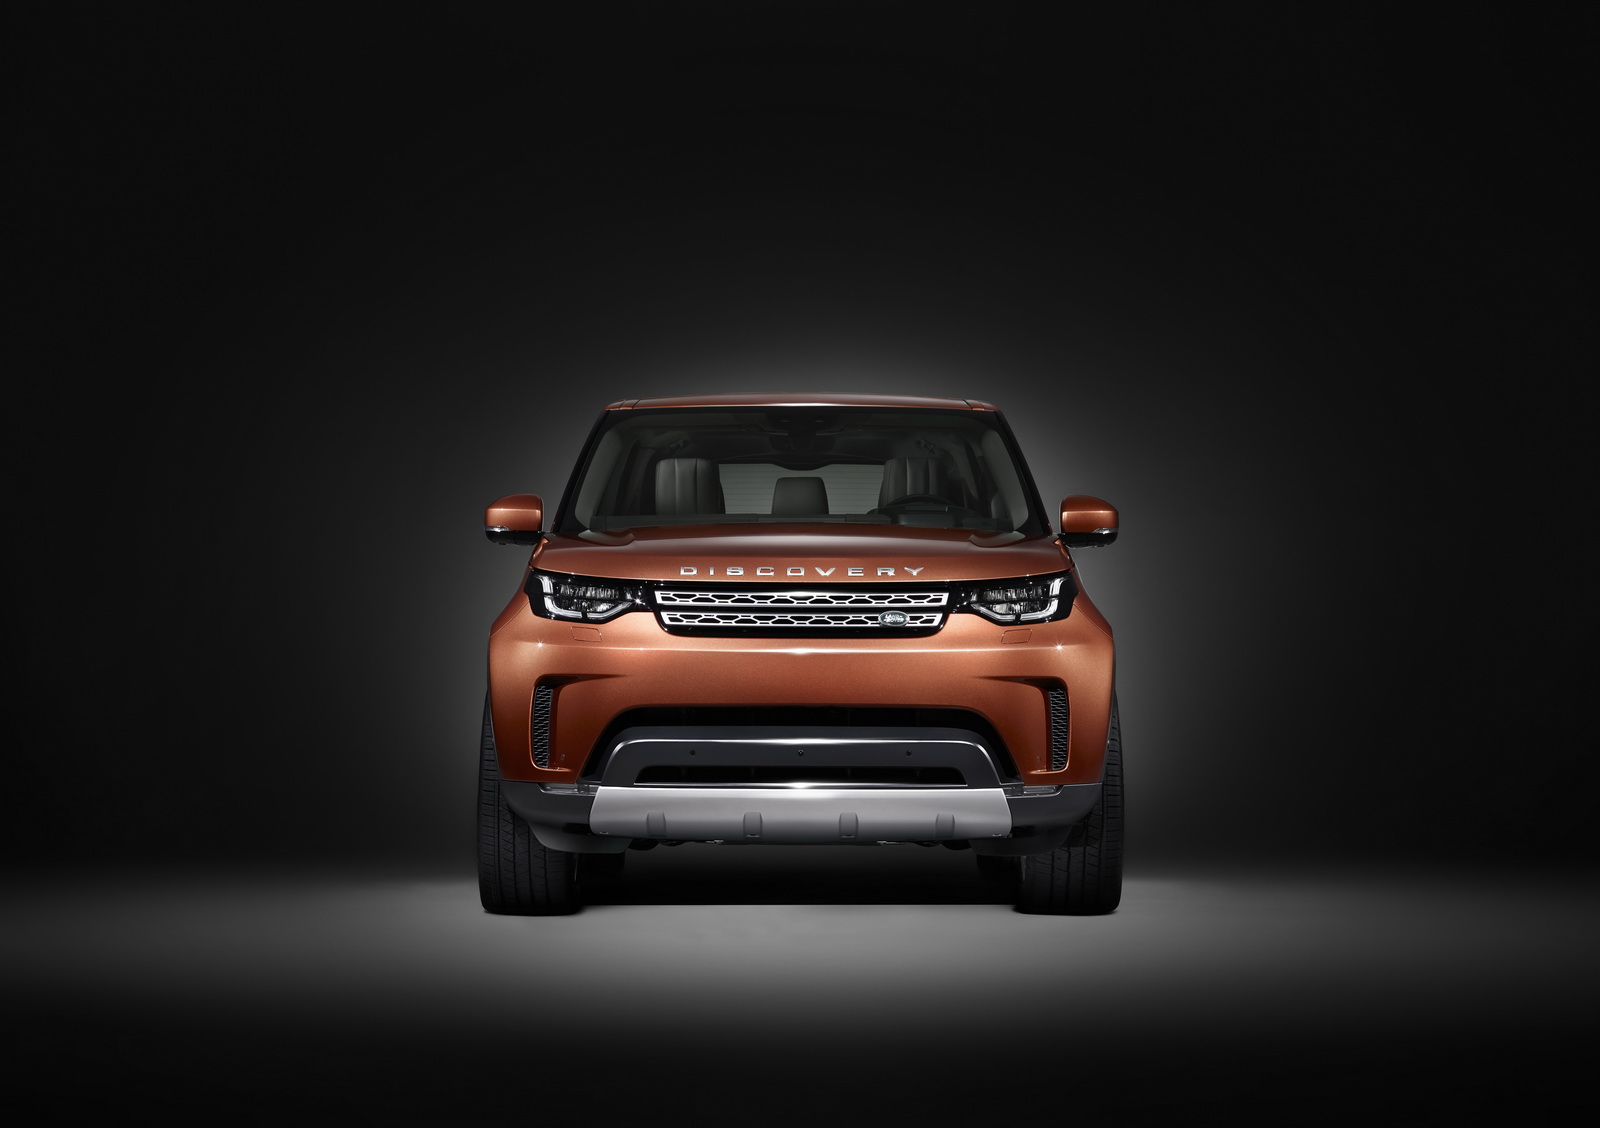 "صور تشويقية" لاند روفر تكشف عن وجه ديسكفري 2017 قبل تدشينها في باريس Land Rover Discovery 1